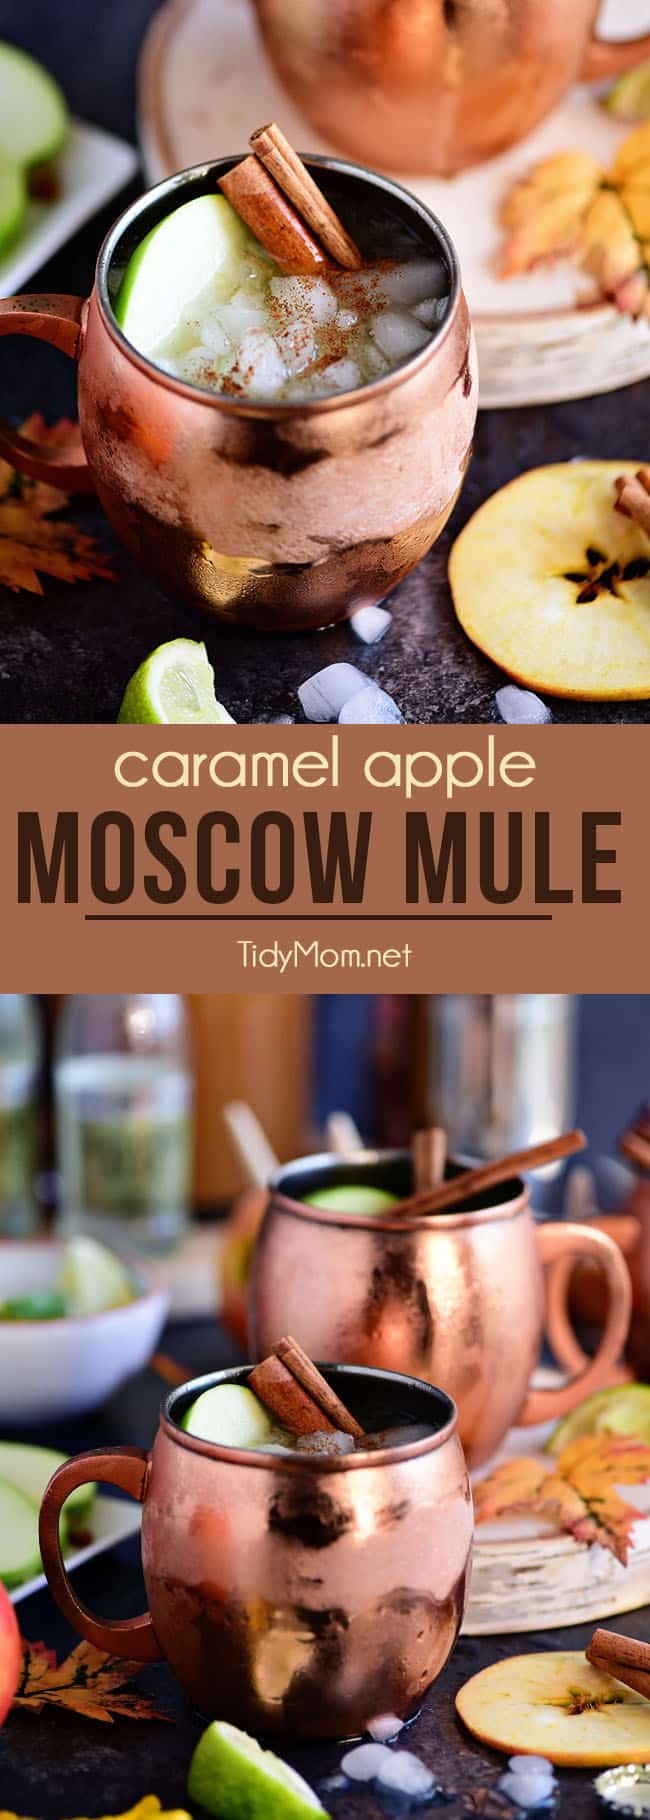 karamelové jablko Moskva Mule je ideální pro podzim! Vyrobeno ze sladké karamelové vodky, čerstvého jablečného moštu a zázvorového piva, určitě se stane oblíbeným podzimním koktejlem! Získejte recept na TidyMom.net